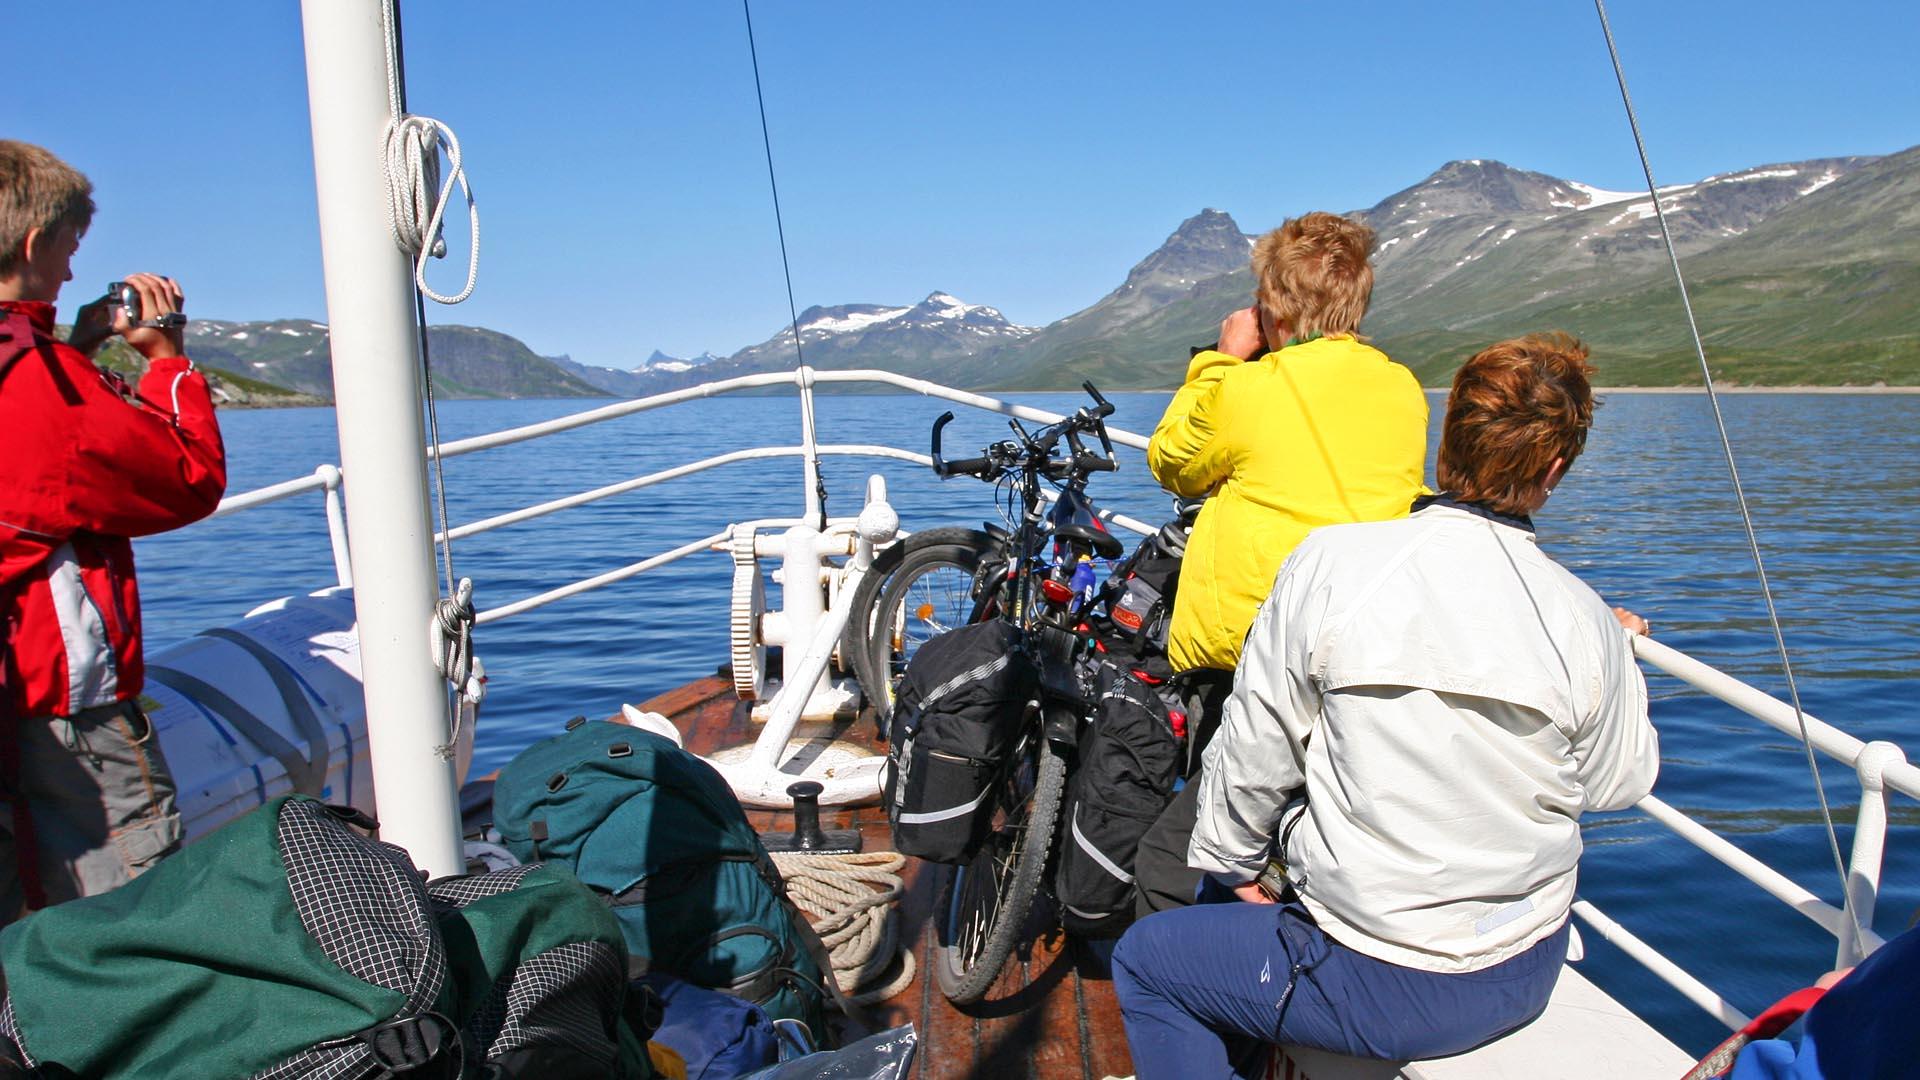 I baugen på en båt på et stort fjellvann med totusenmetertopper langs bredden. Folk sitter og nyter utsikten en klar sommerdag, og noen har med sykkel ombord.